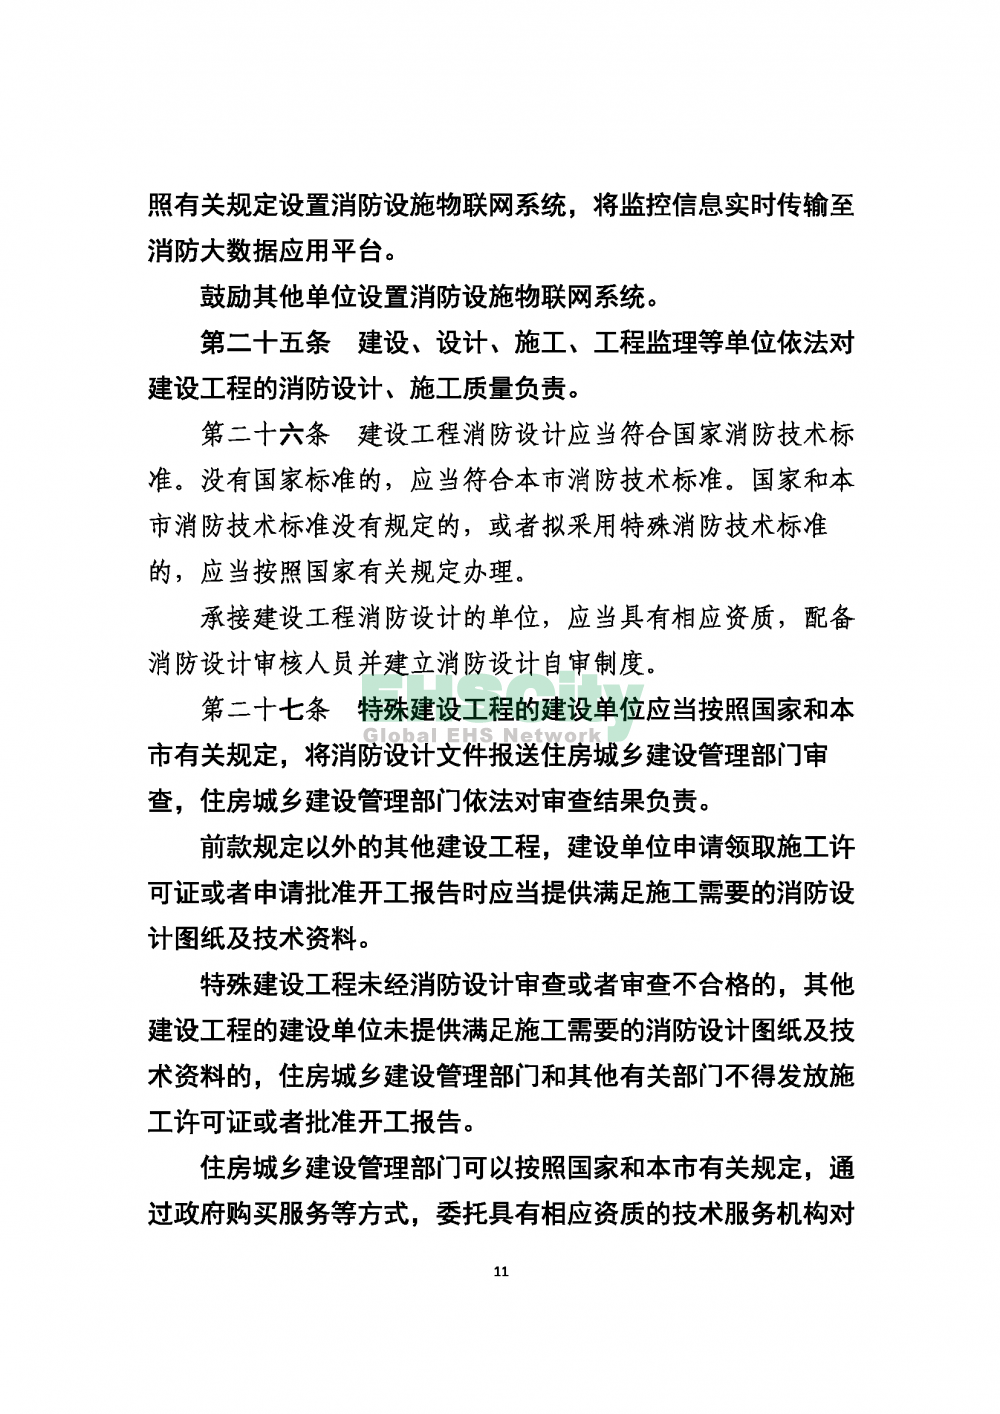 2020版上海消防条例_页面_11